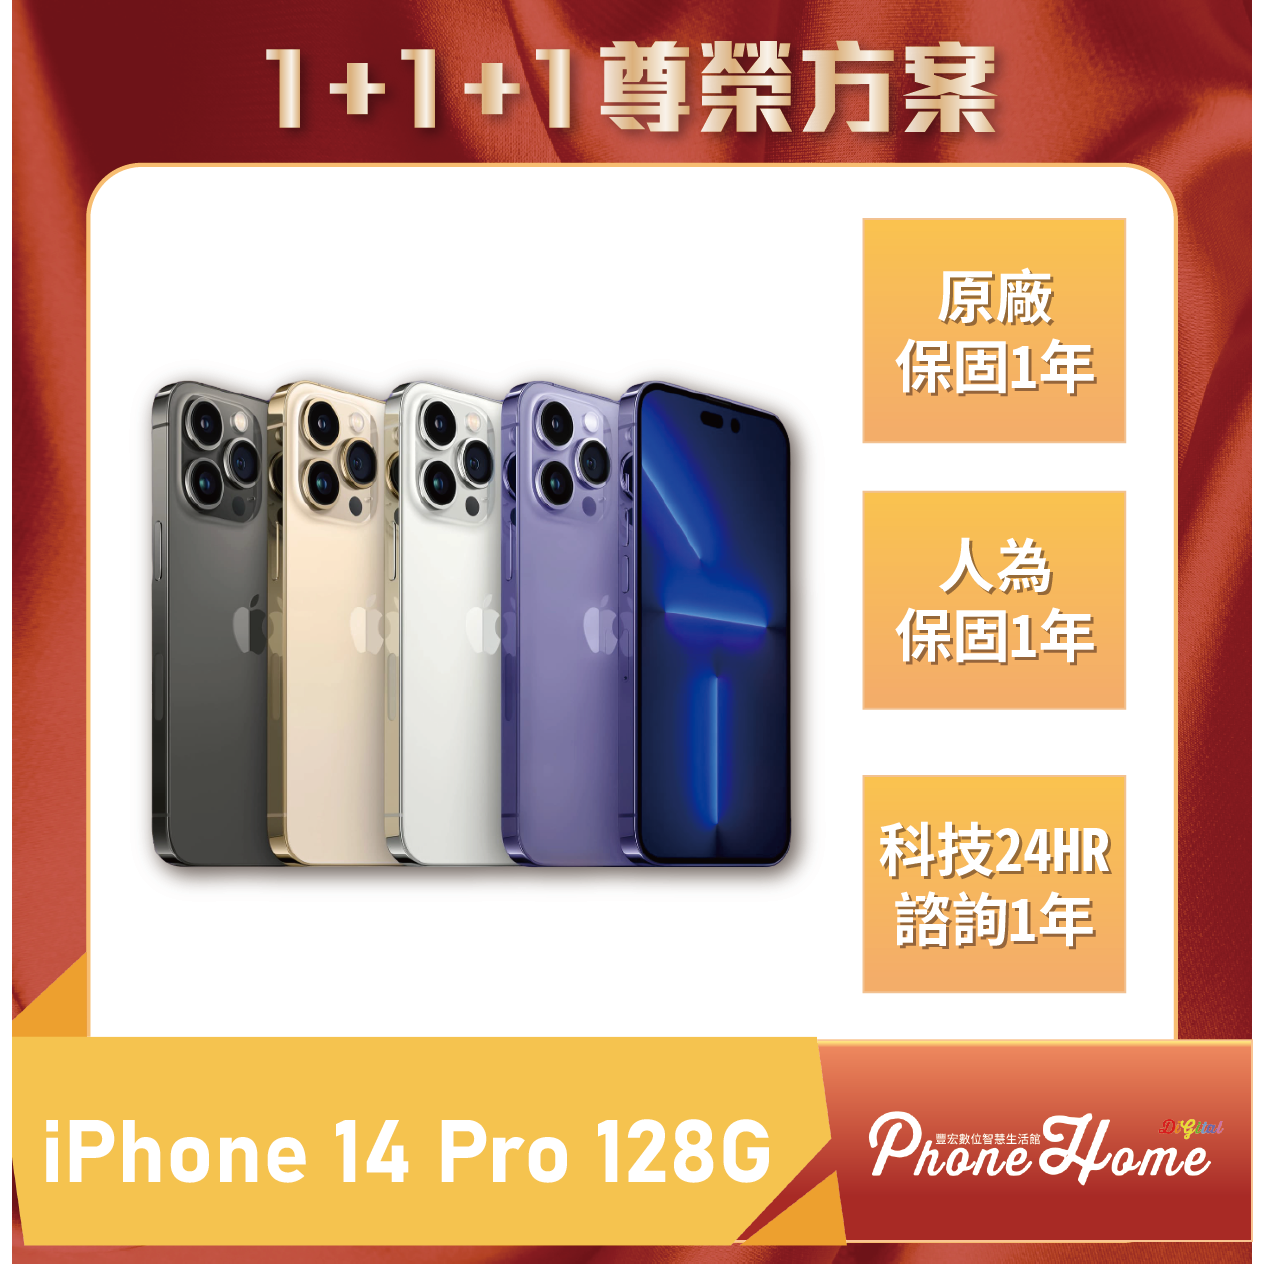 1+1+1尊榮方案】IPhone 14 Pro 128G下單前先私訊FB粉專